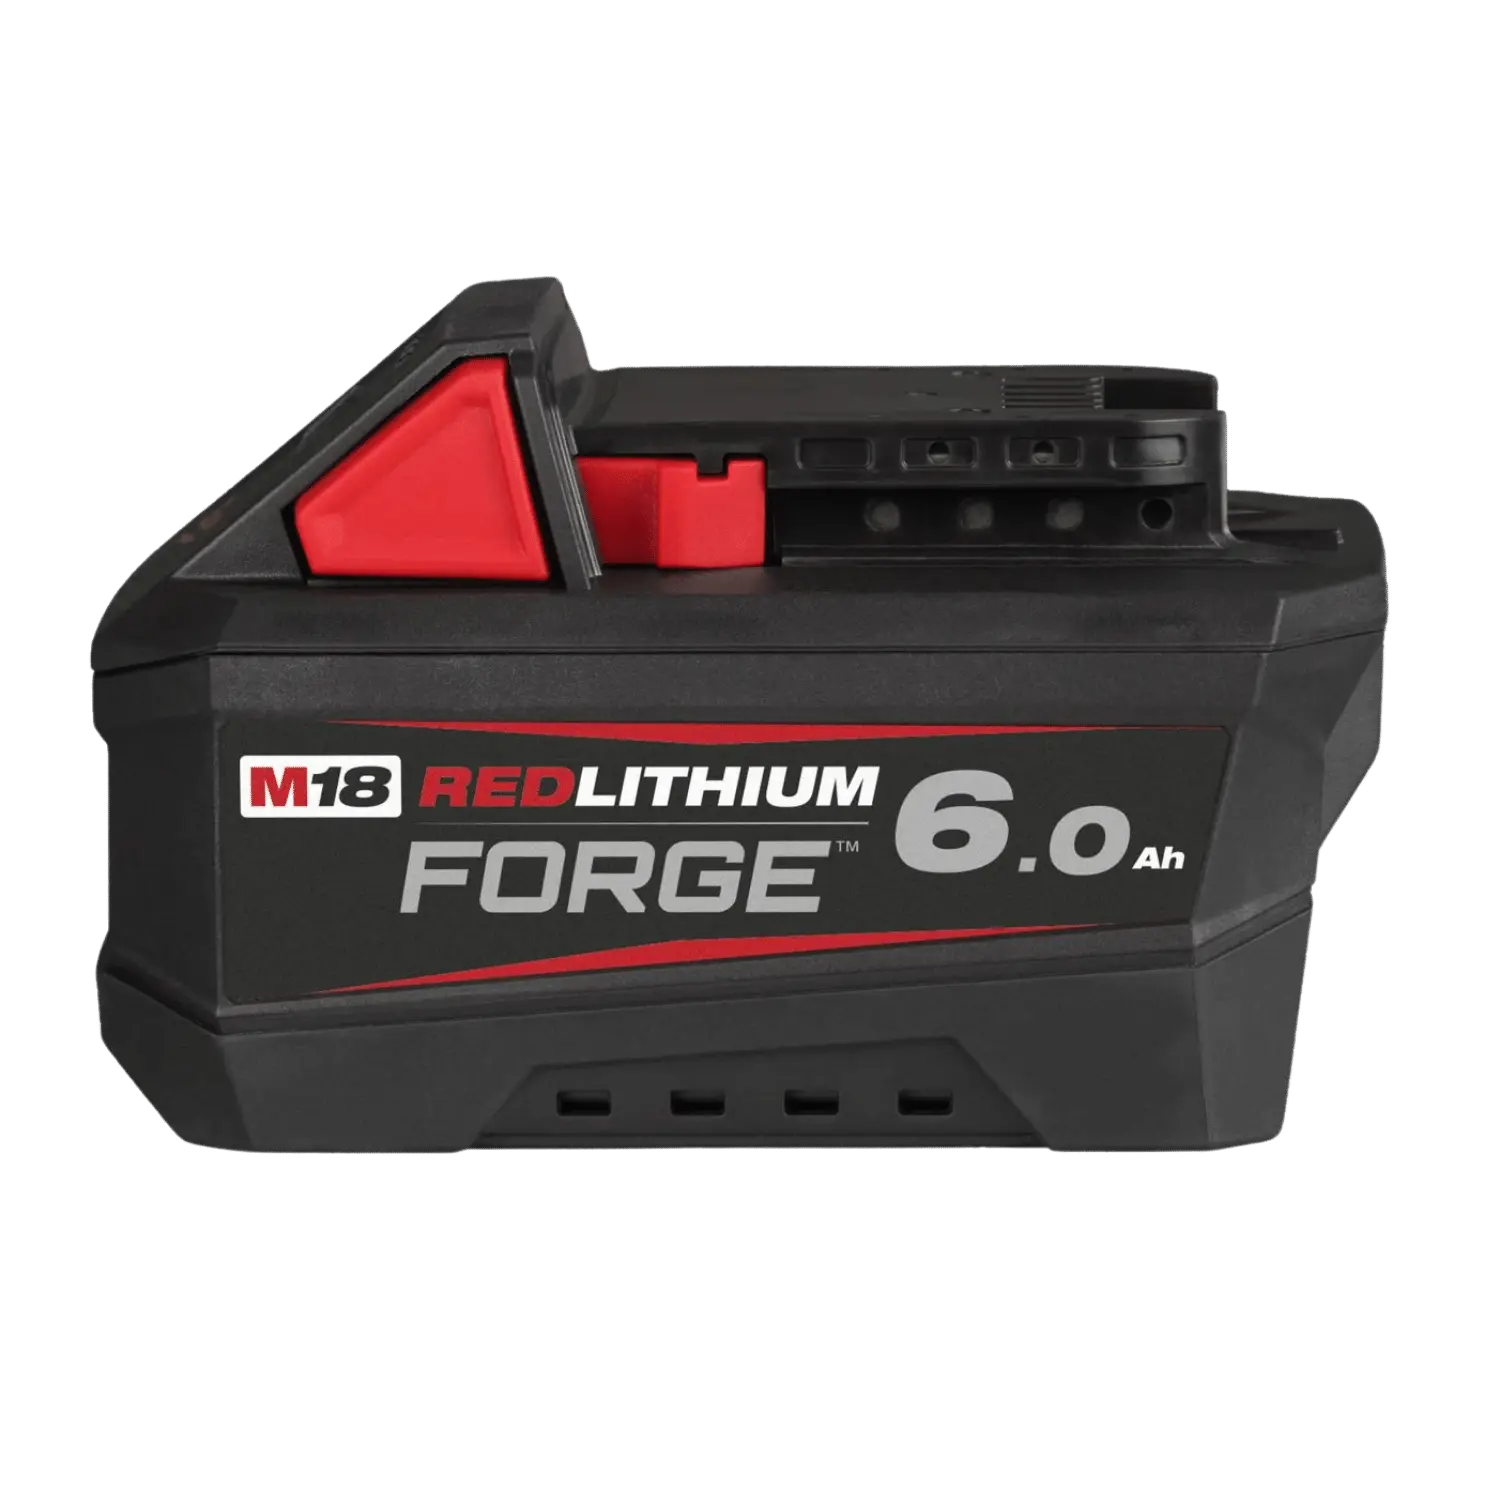 Batterie 18V 6.0 Ah M18 Forge